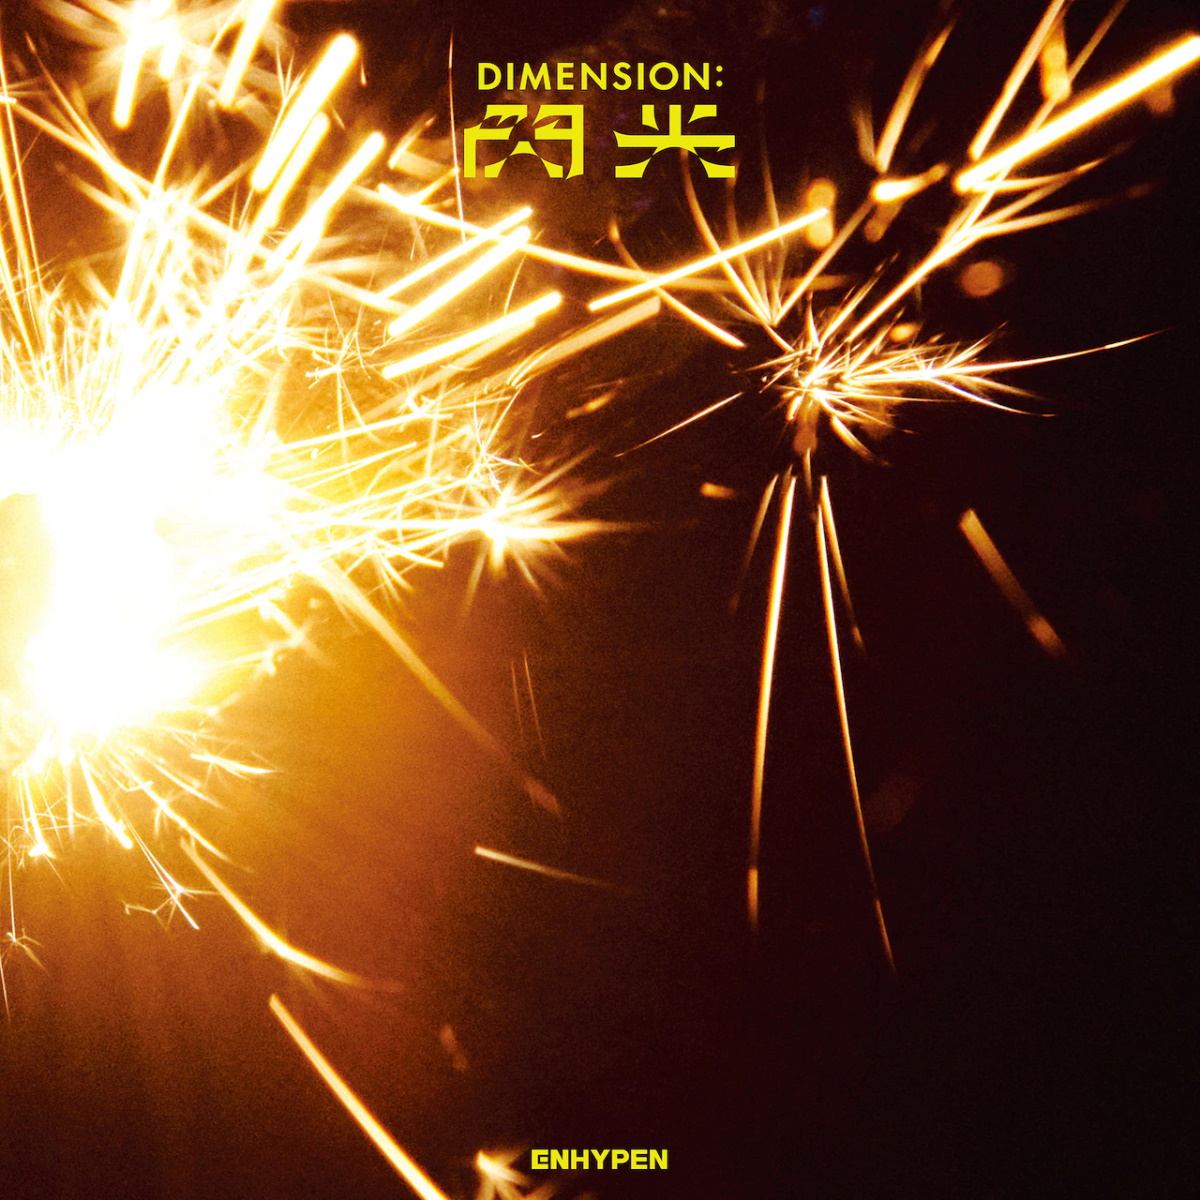 Cover art for『ENHYPEN - Drunk-Dazed [Japanese Ver.]』from the release『DIMENSION : Senkou』